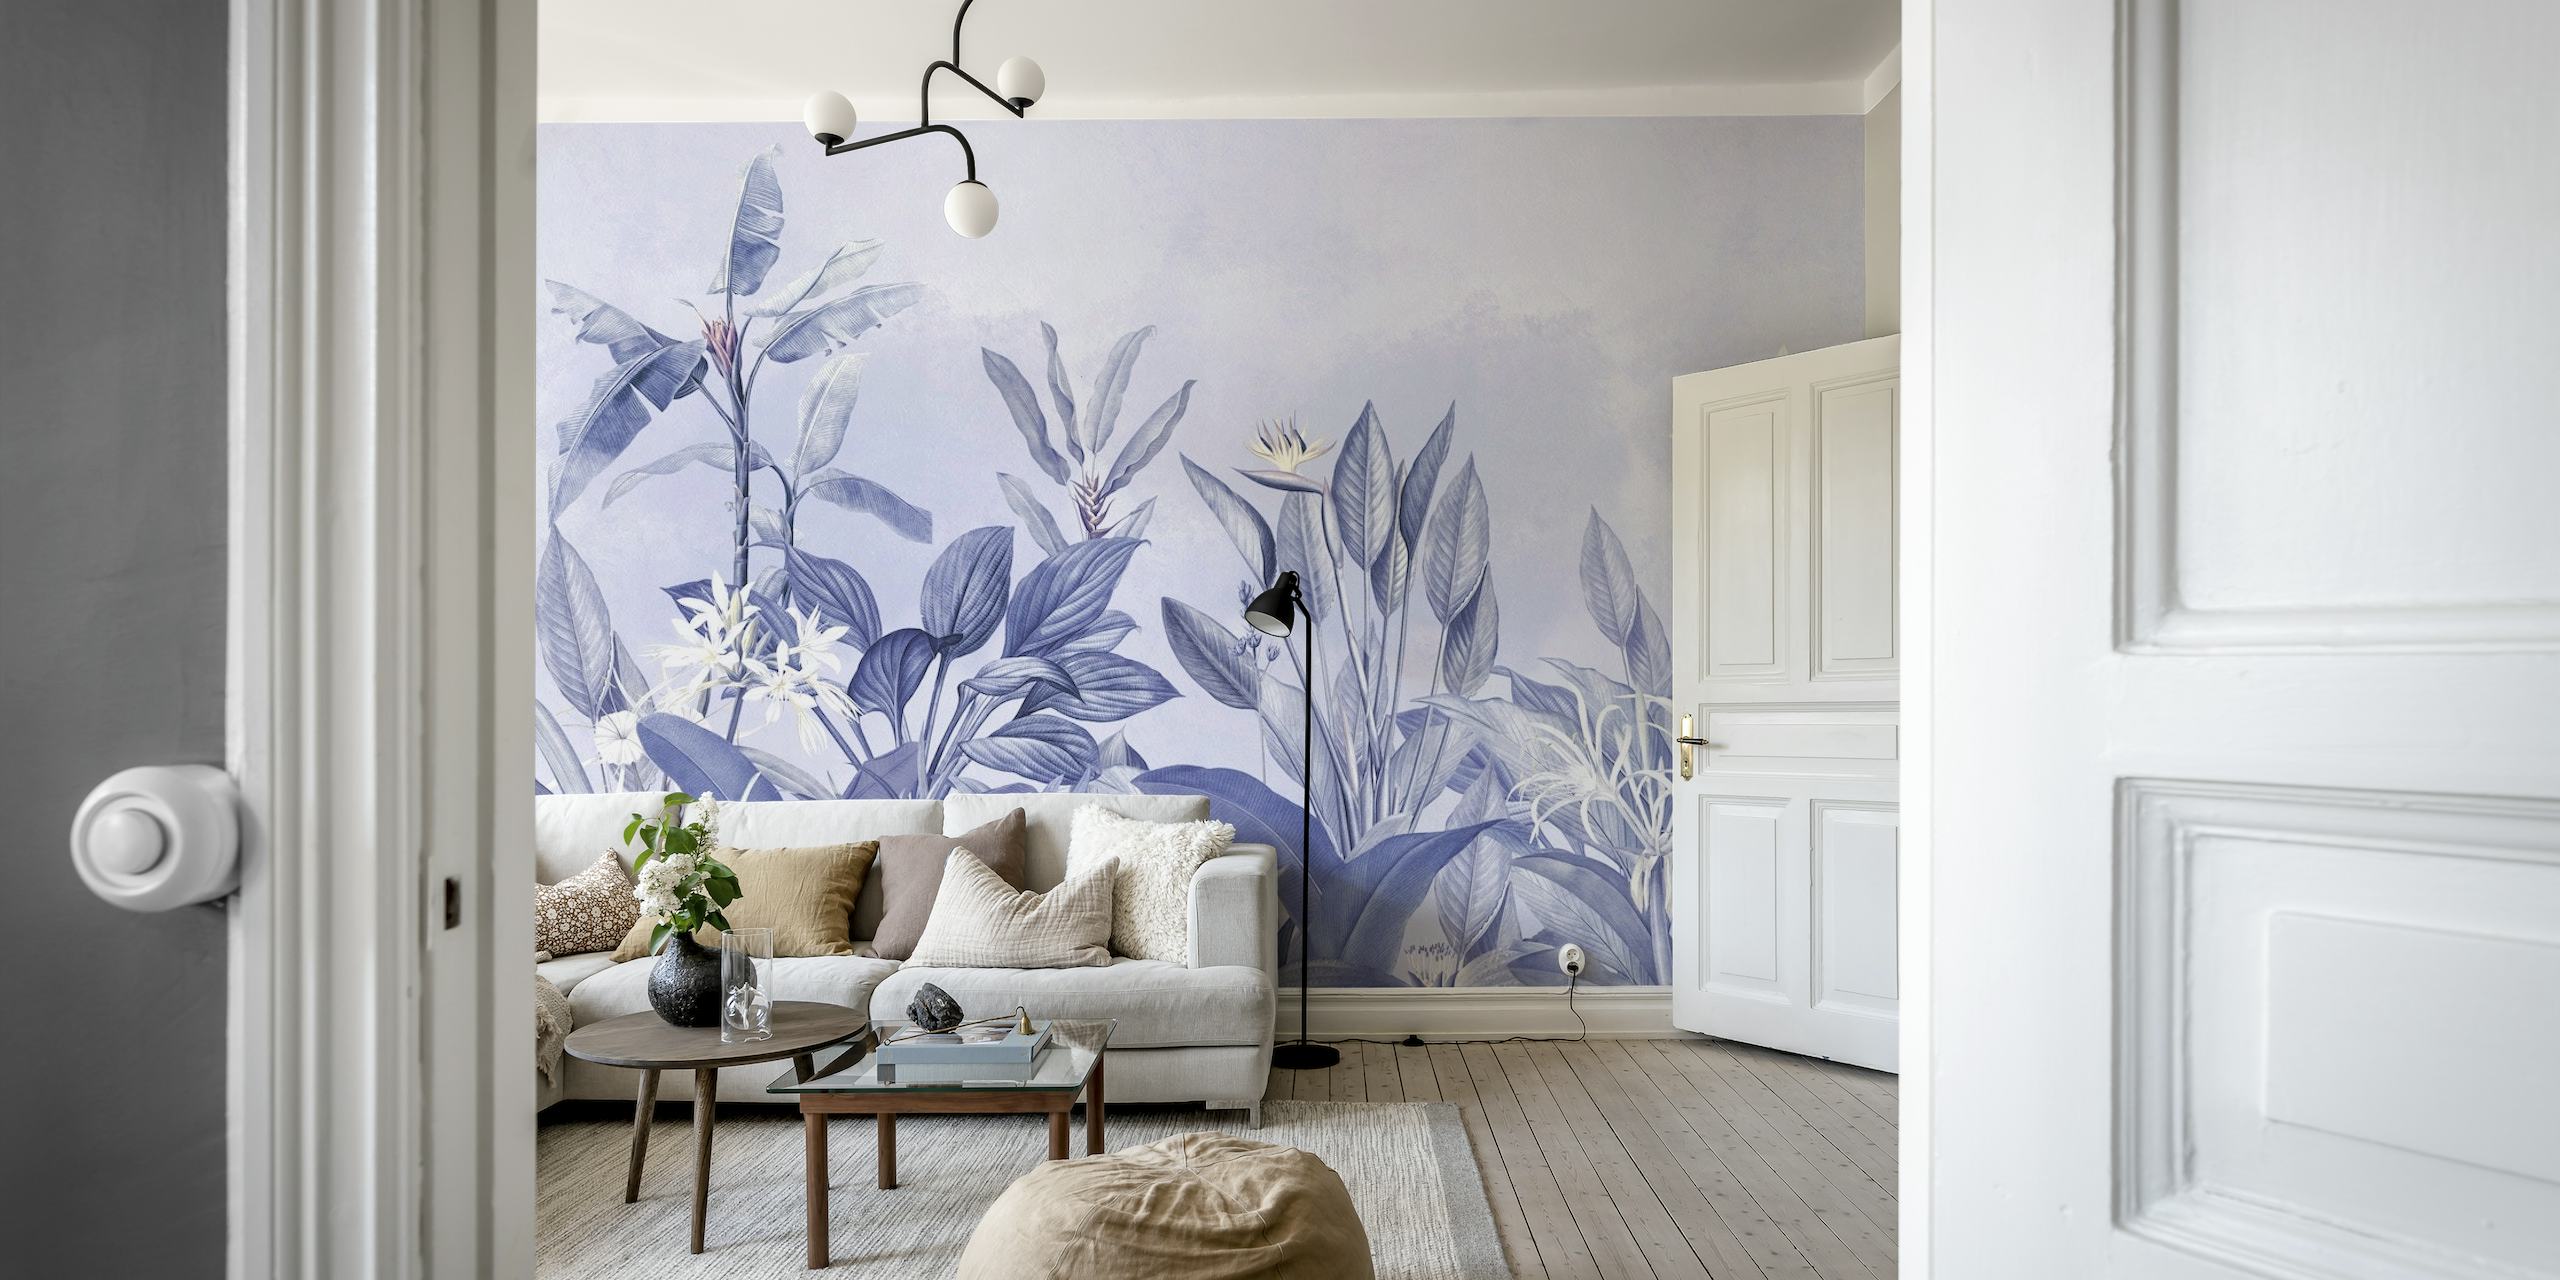 Elegante vintage botanische tuin muurschildering in blauw-witte tinten